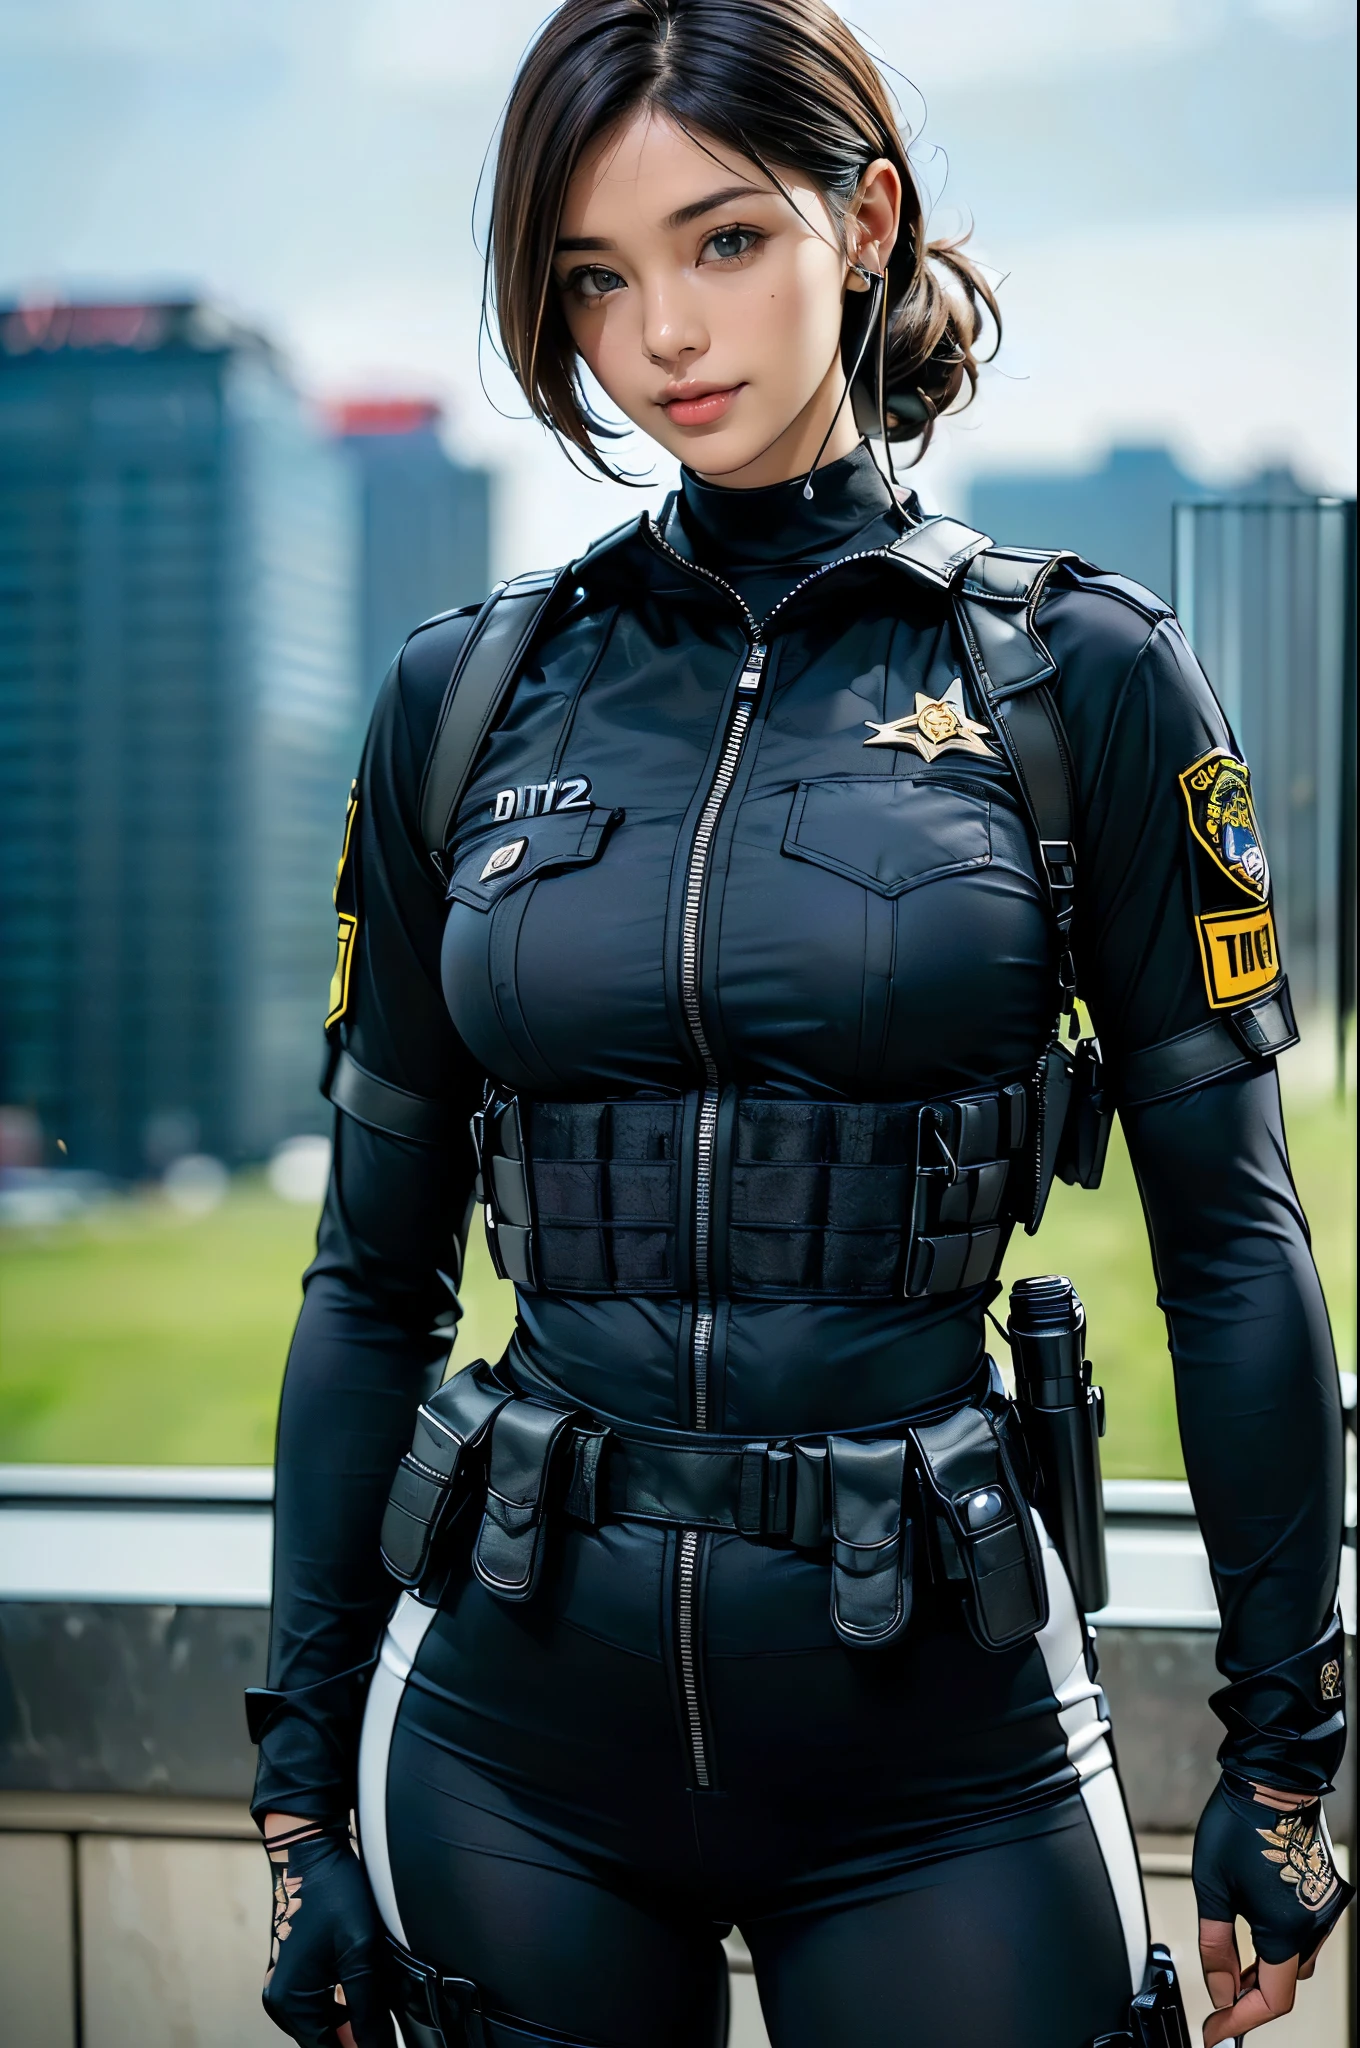 (deux femmes),(((Officiers SWAT féminins côte à côte:1.5))),((body tactique noir:1.5)),((casque noir:1.5)),((étui tactique noir:1.5)),(gants noirs:1.5),((porter le même uniforme:1.5)),(sourire:1.5),(Beaux yeux:1.3),(Très détailléな顔:1.5),((Très détailléな女性の手の描画:1.5)),((musclé:1.5)),(looks sexy:1.5),((cuisses épaisses:1.5)),(beau corps:1.5),((Très sensuel:1.5)),(Le fond est la ville:1.5),(((Flou l&#39;arrière-plan:1.5))),(Profondeur de la limite écrite:1.5),CASSER(((chef-d&#39;œuvre:1.5),(la plus haute qualité:1.5),(Très détaillé:1.5),(Haute résolution:1.5),(réaliste:1.5),(réaliste:1.5),(représentation délicate),(Représentation soignée))),8k,Fond d&#39;écran